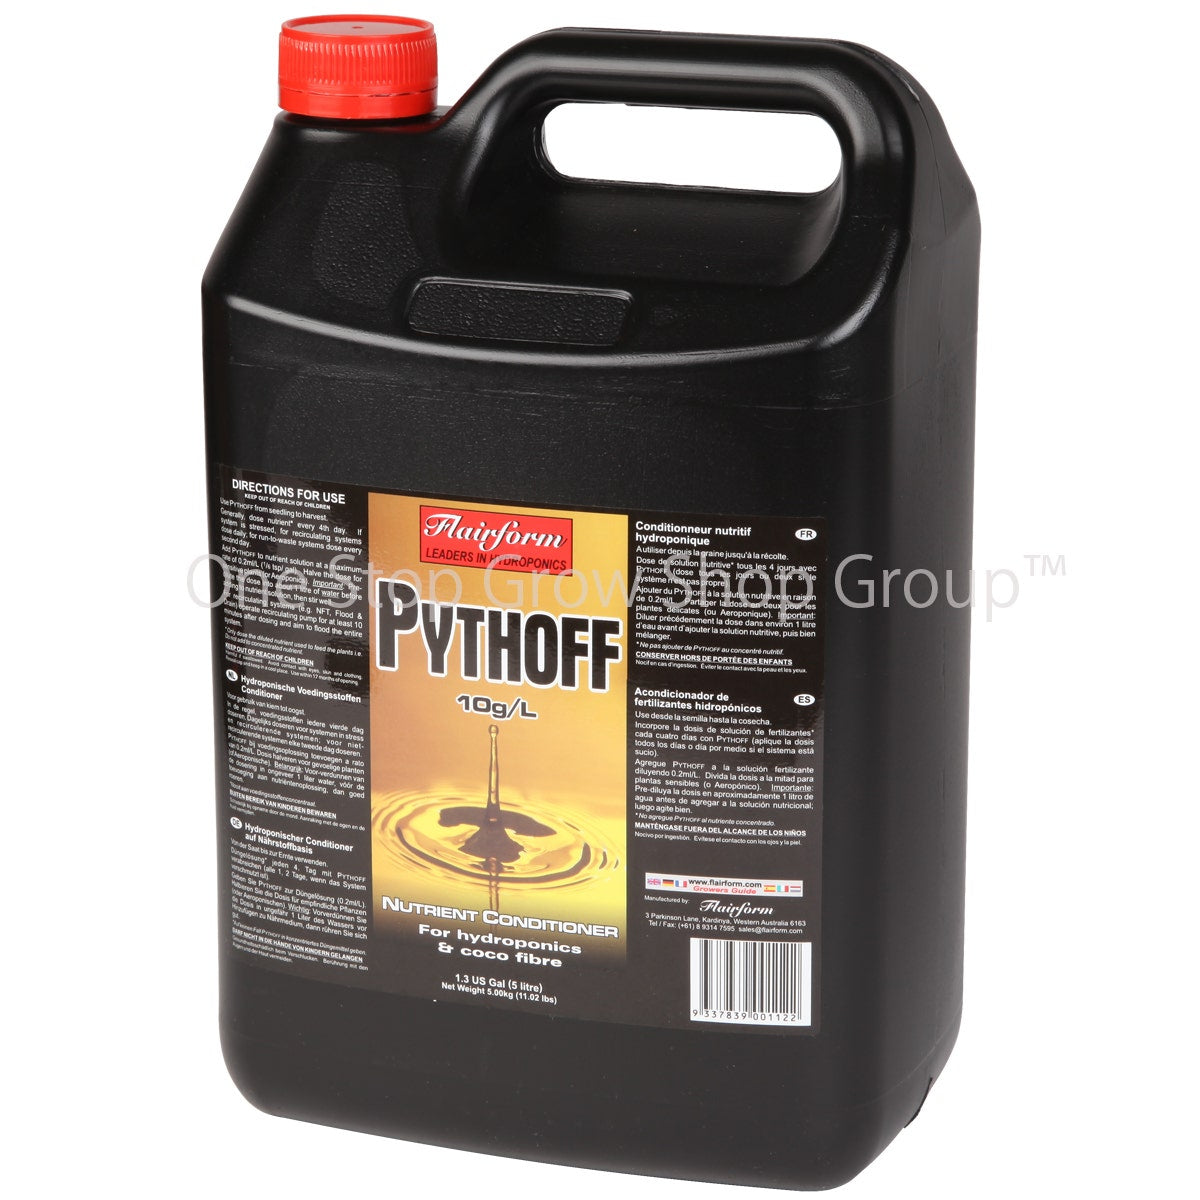 Pythoff